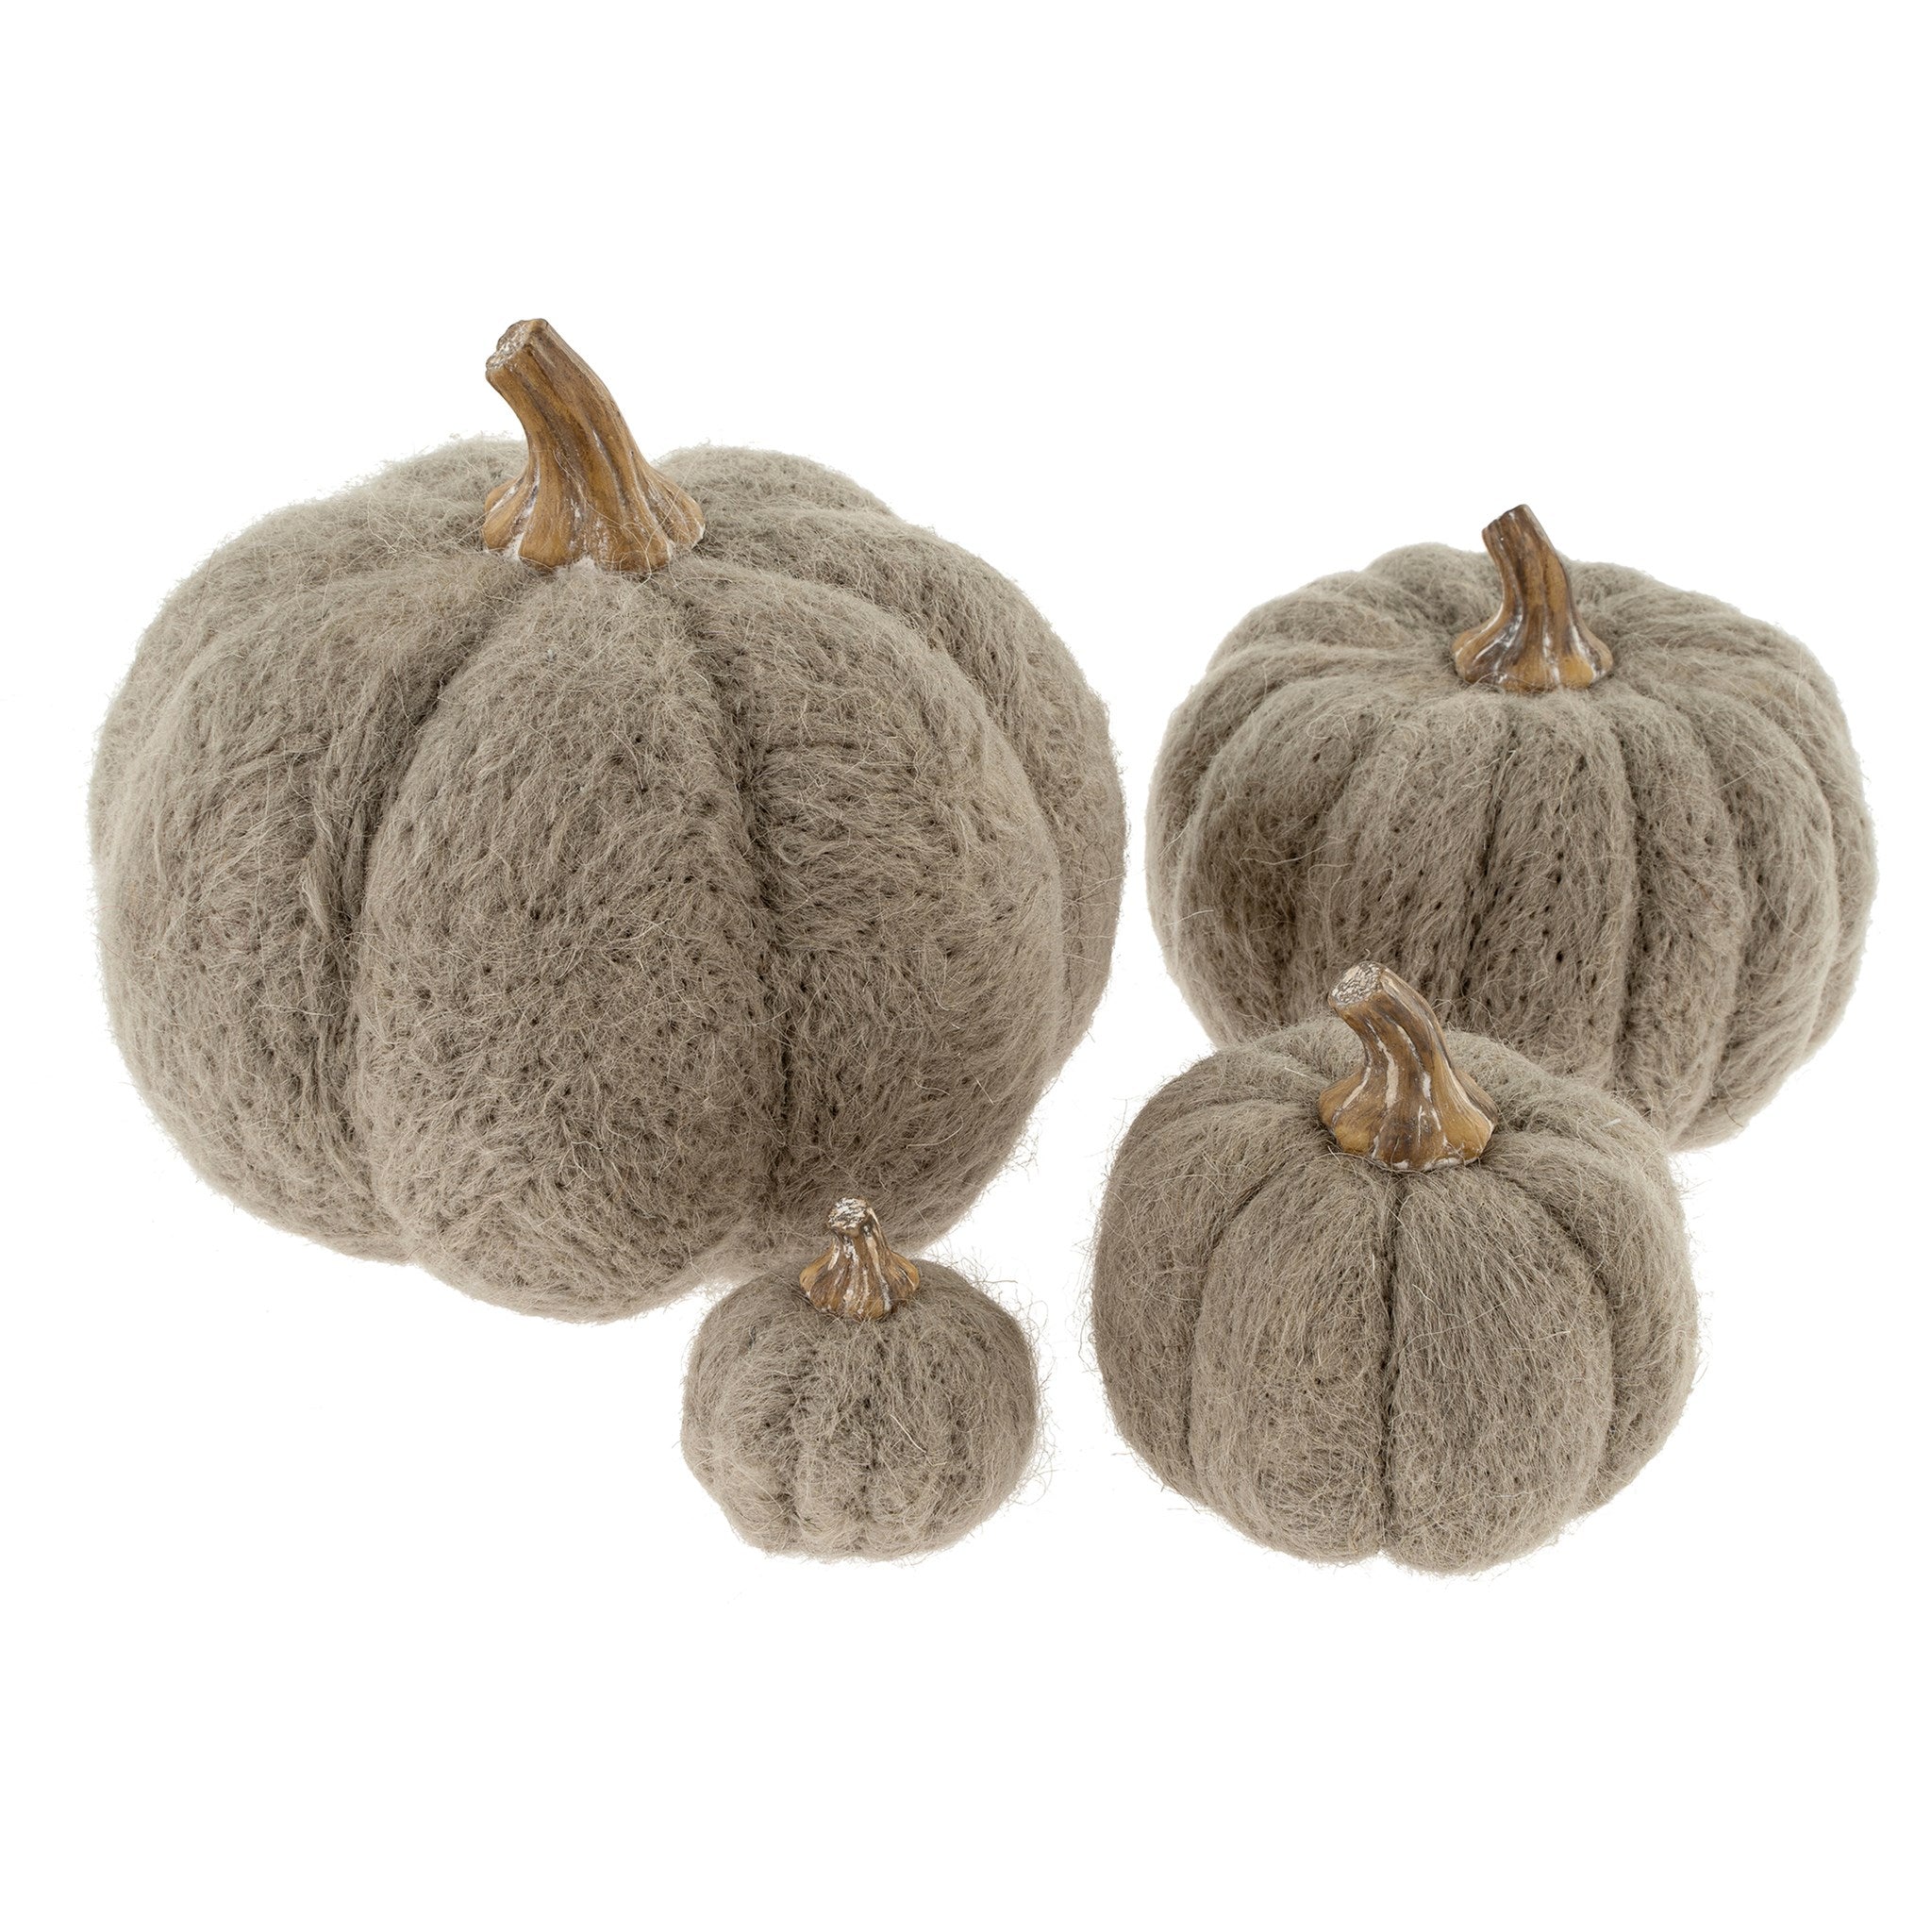 Grey Felt Pumpkin - 4 sizes